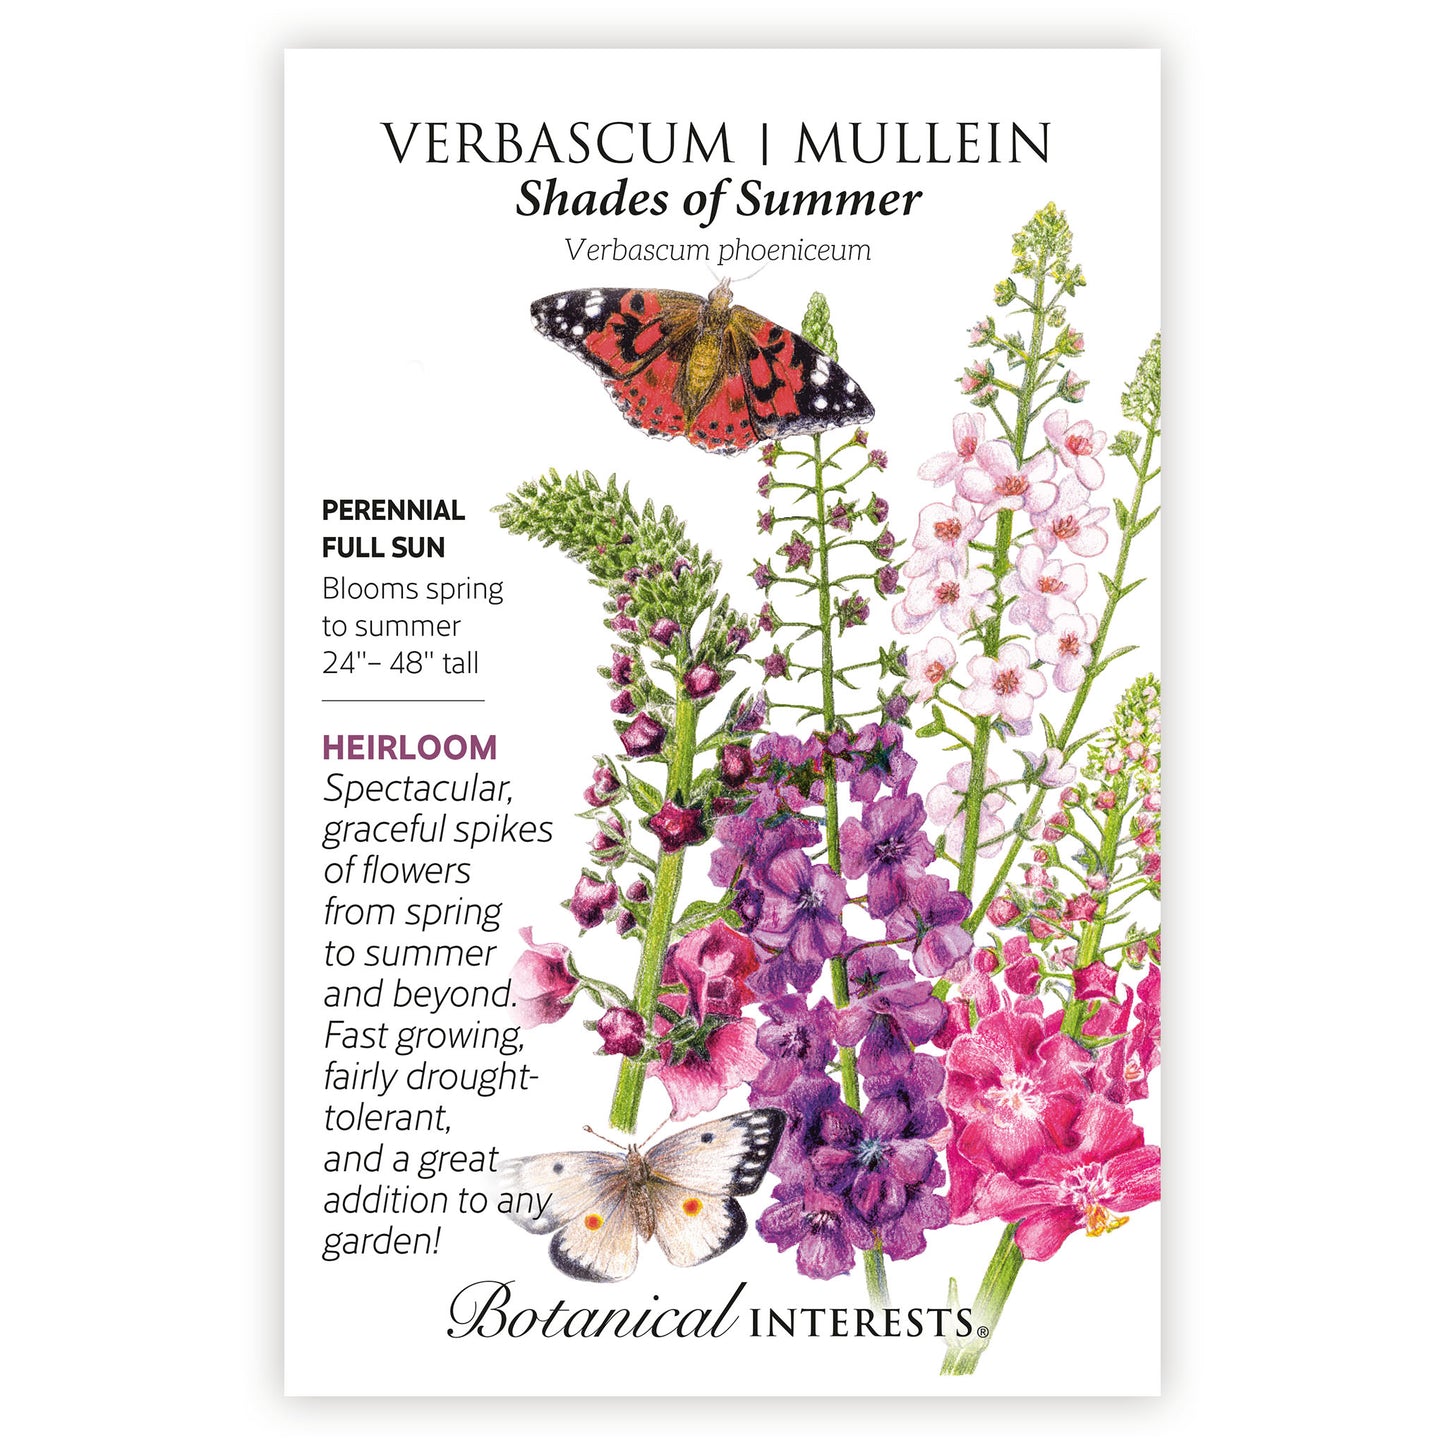 Shades of Summer Verbascum (Mullein) Seeds